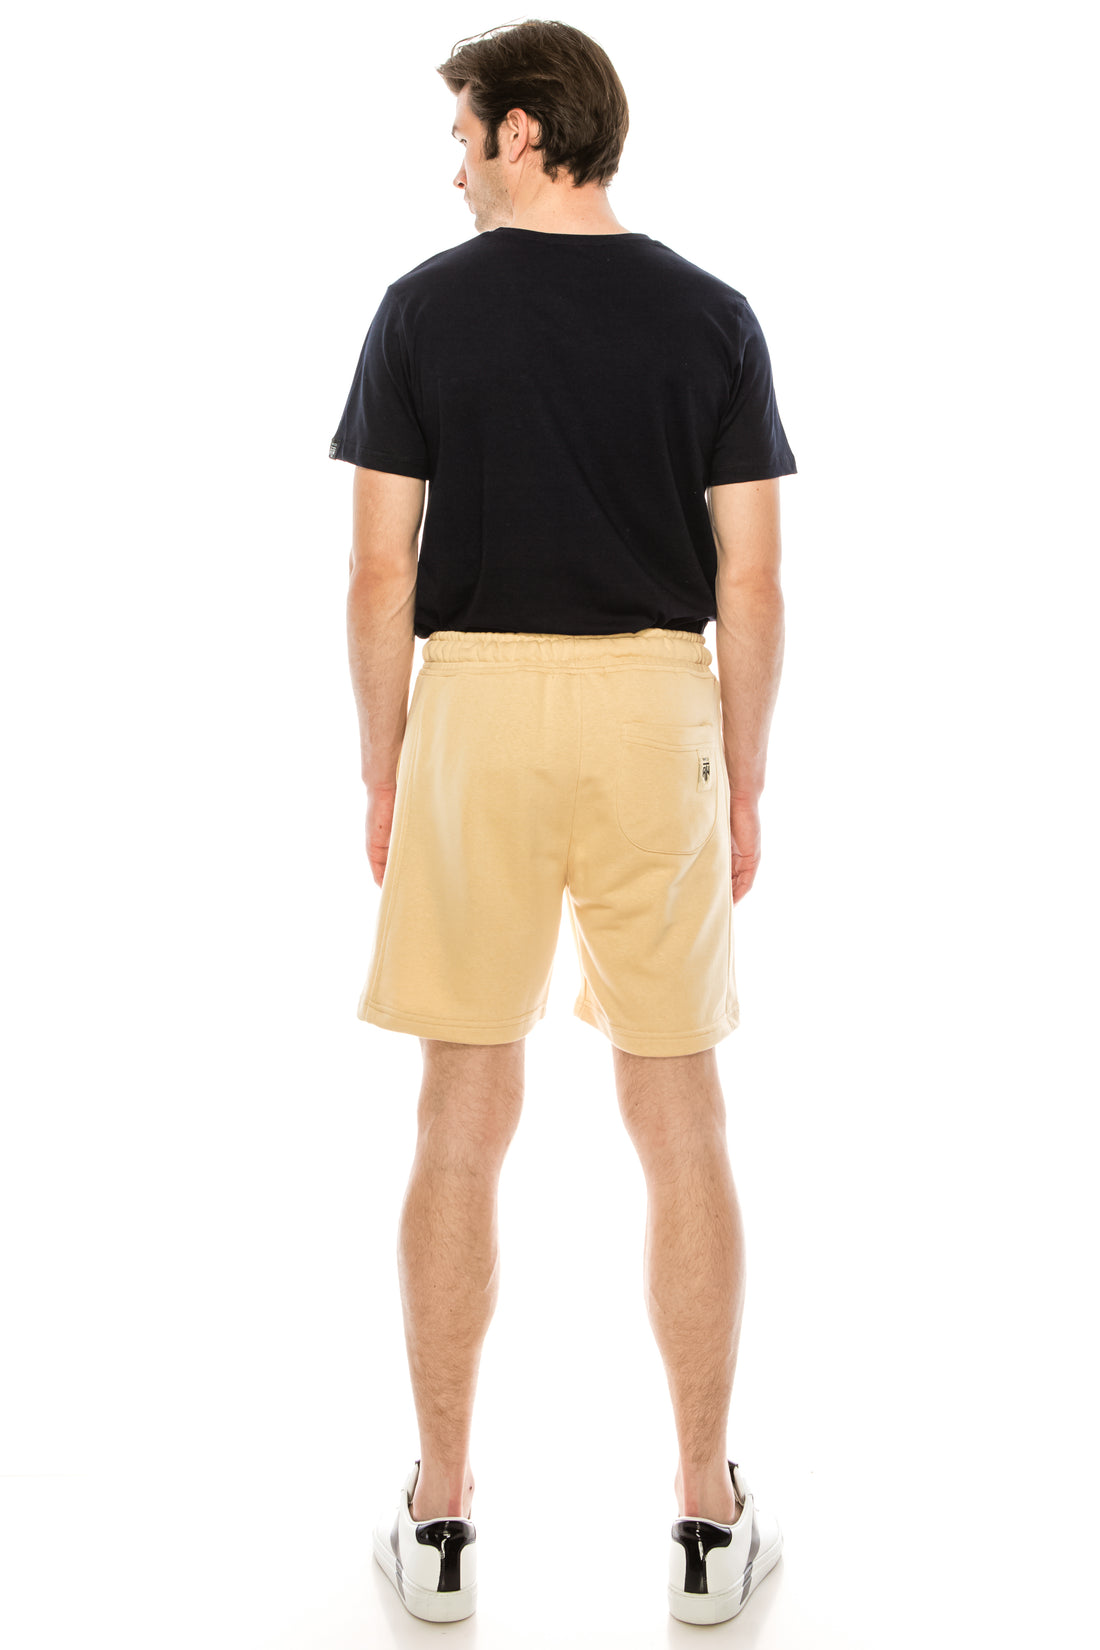 Weekender Cotton Shorts - LIGHT BEIGE - Ron Tomson